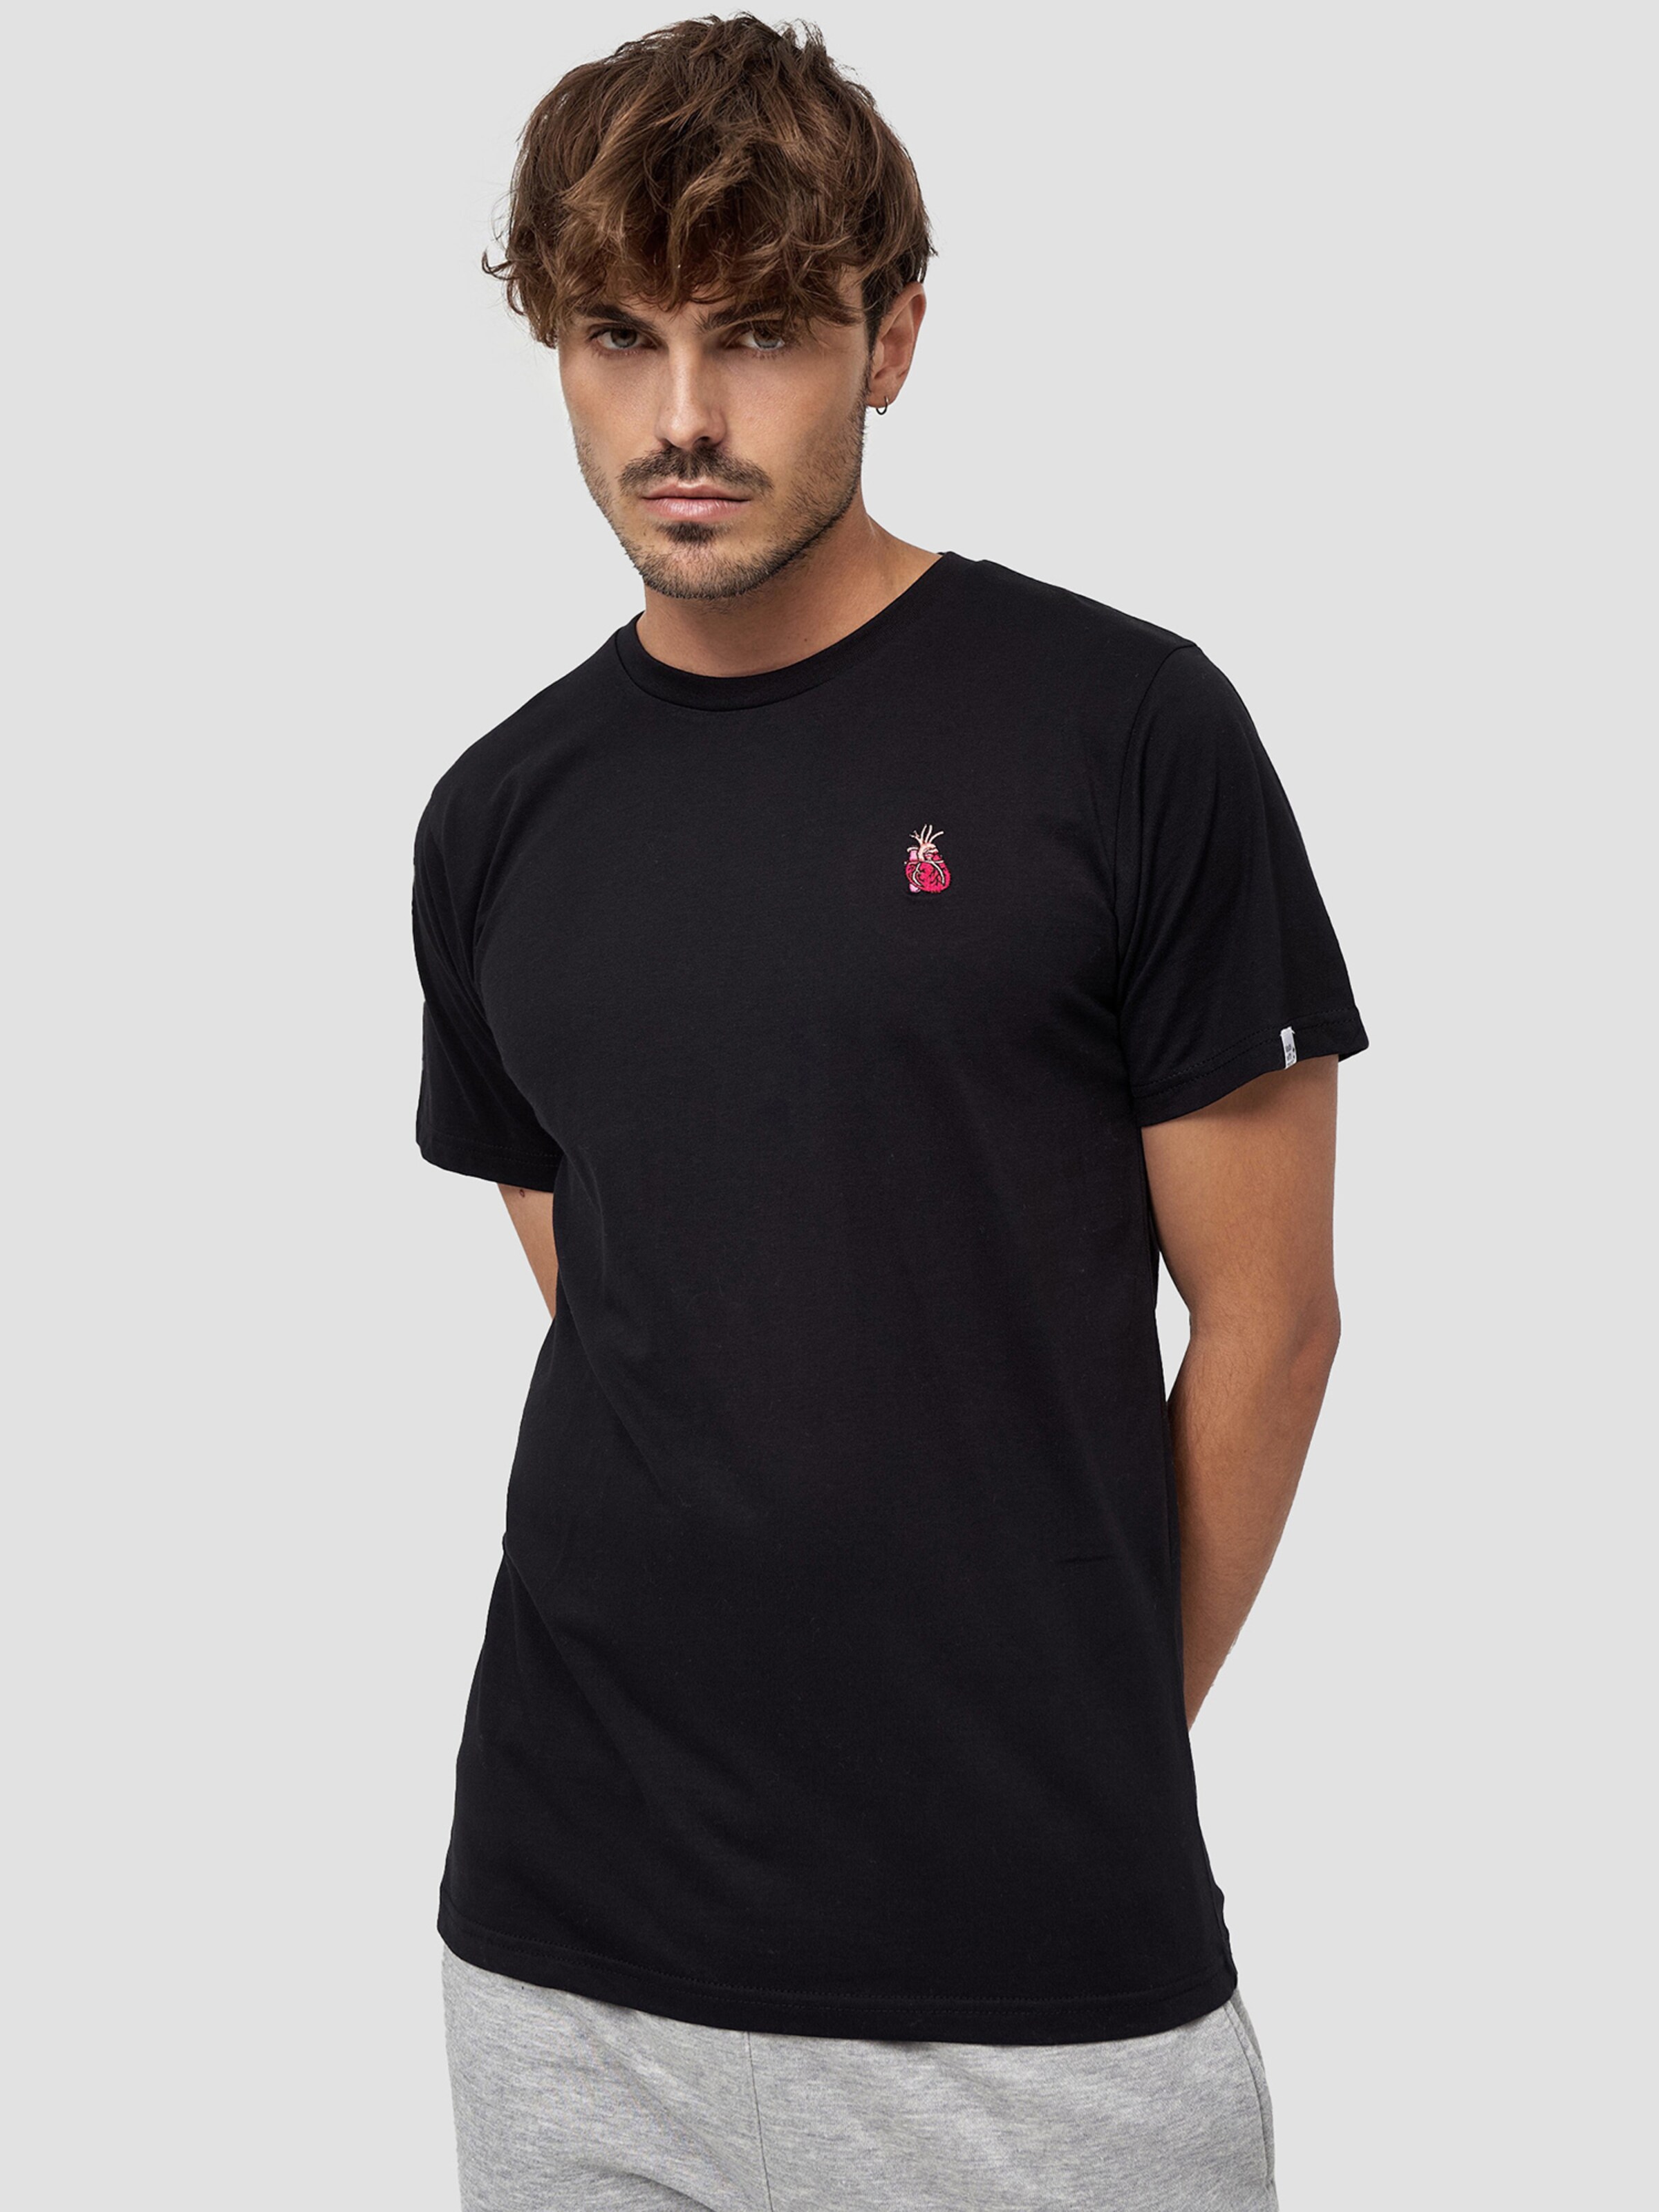 Männer Shirts Mikon T-Shirts ' Herz ' in Schwarz - PJ89343